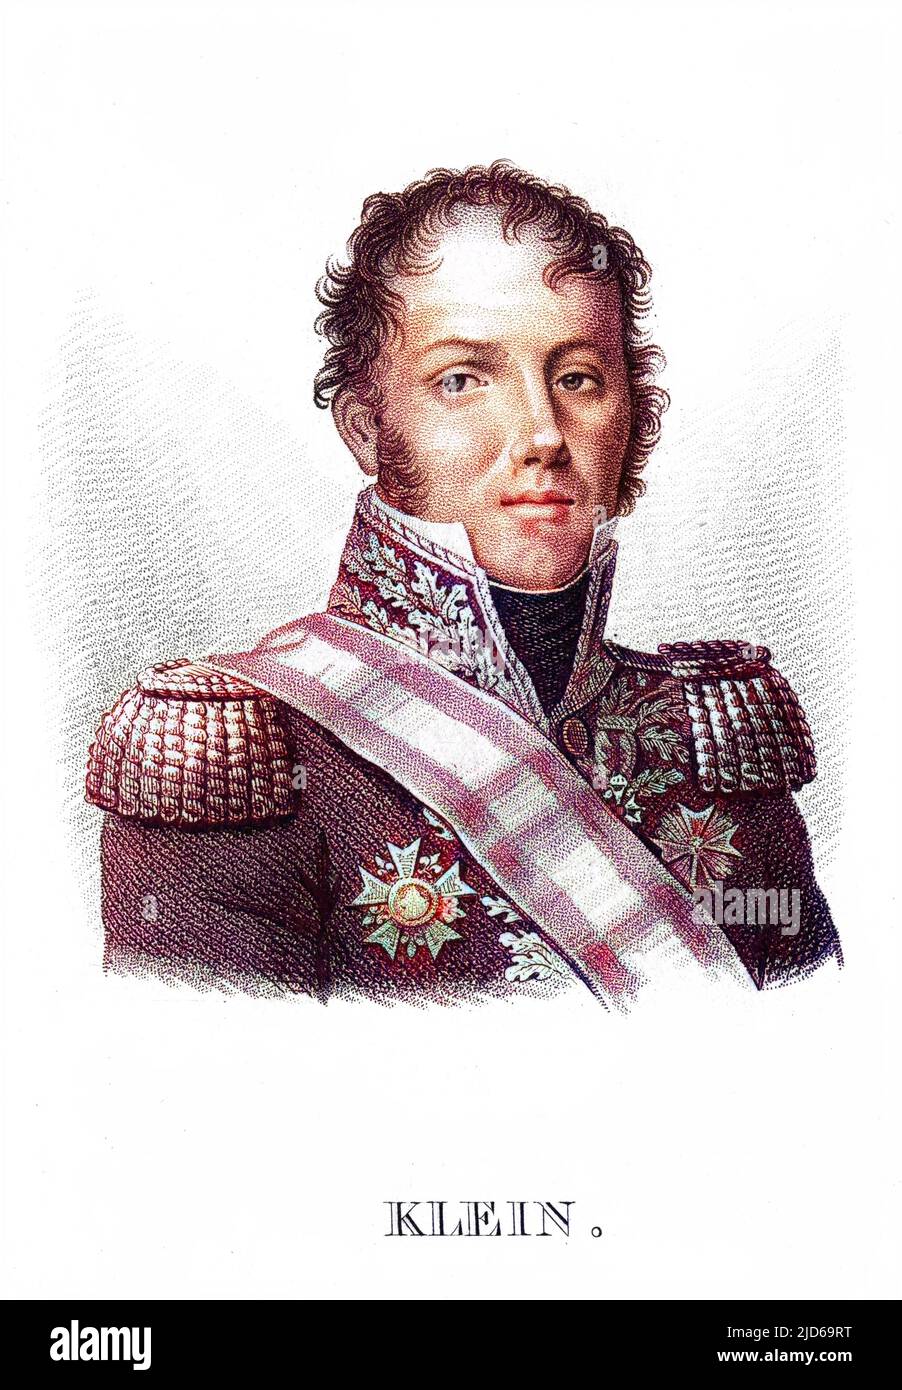 DOMINIQUE LOUIS ANTOINE. comte KLEIN Französischer Militärkommandeur und Staatsmann Colorized Version of : 10162310 Datum: 1761 - 1845 Stockfoto